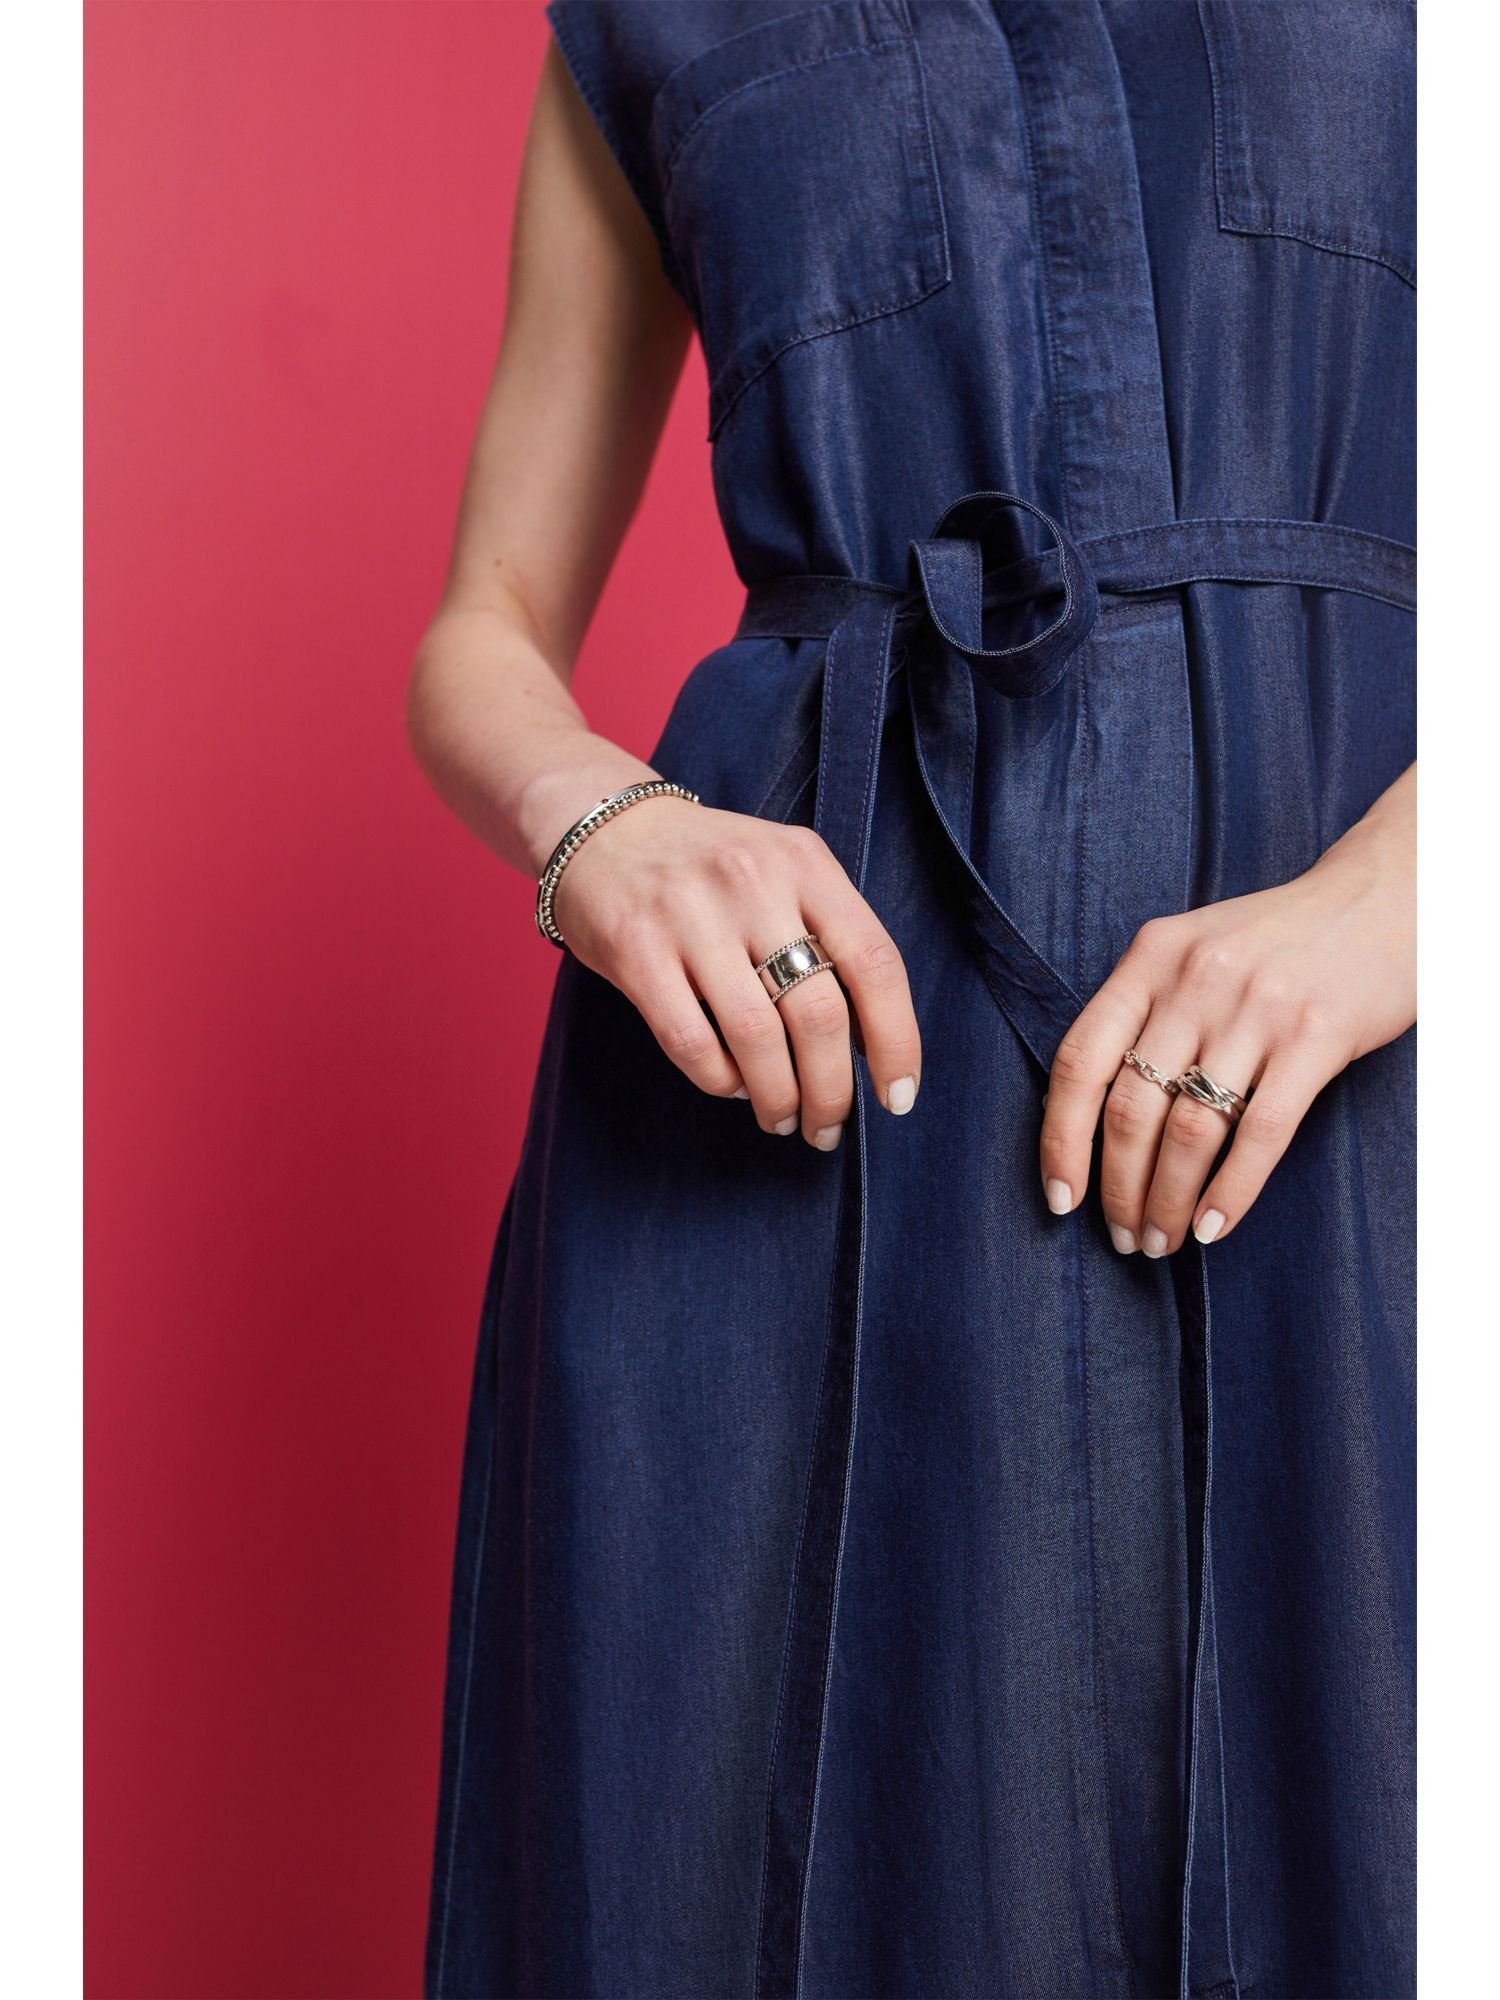 WASHED Esprit Denim TENCEL™ Collection Hemdblusenkleid Gürtel Midikleid mit BLUE DARK aus